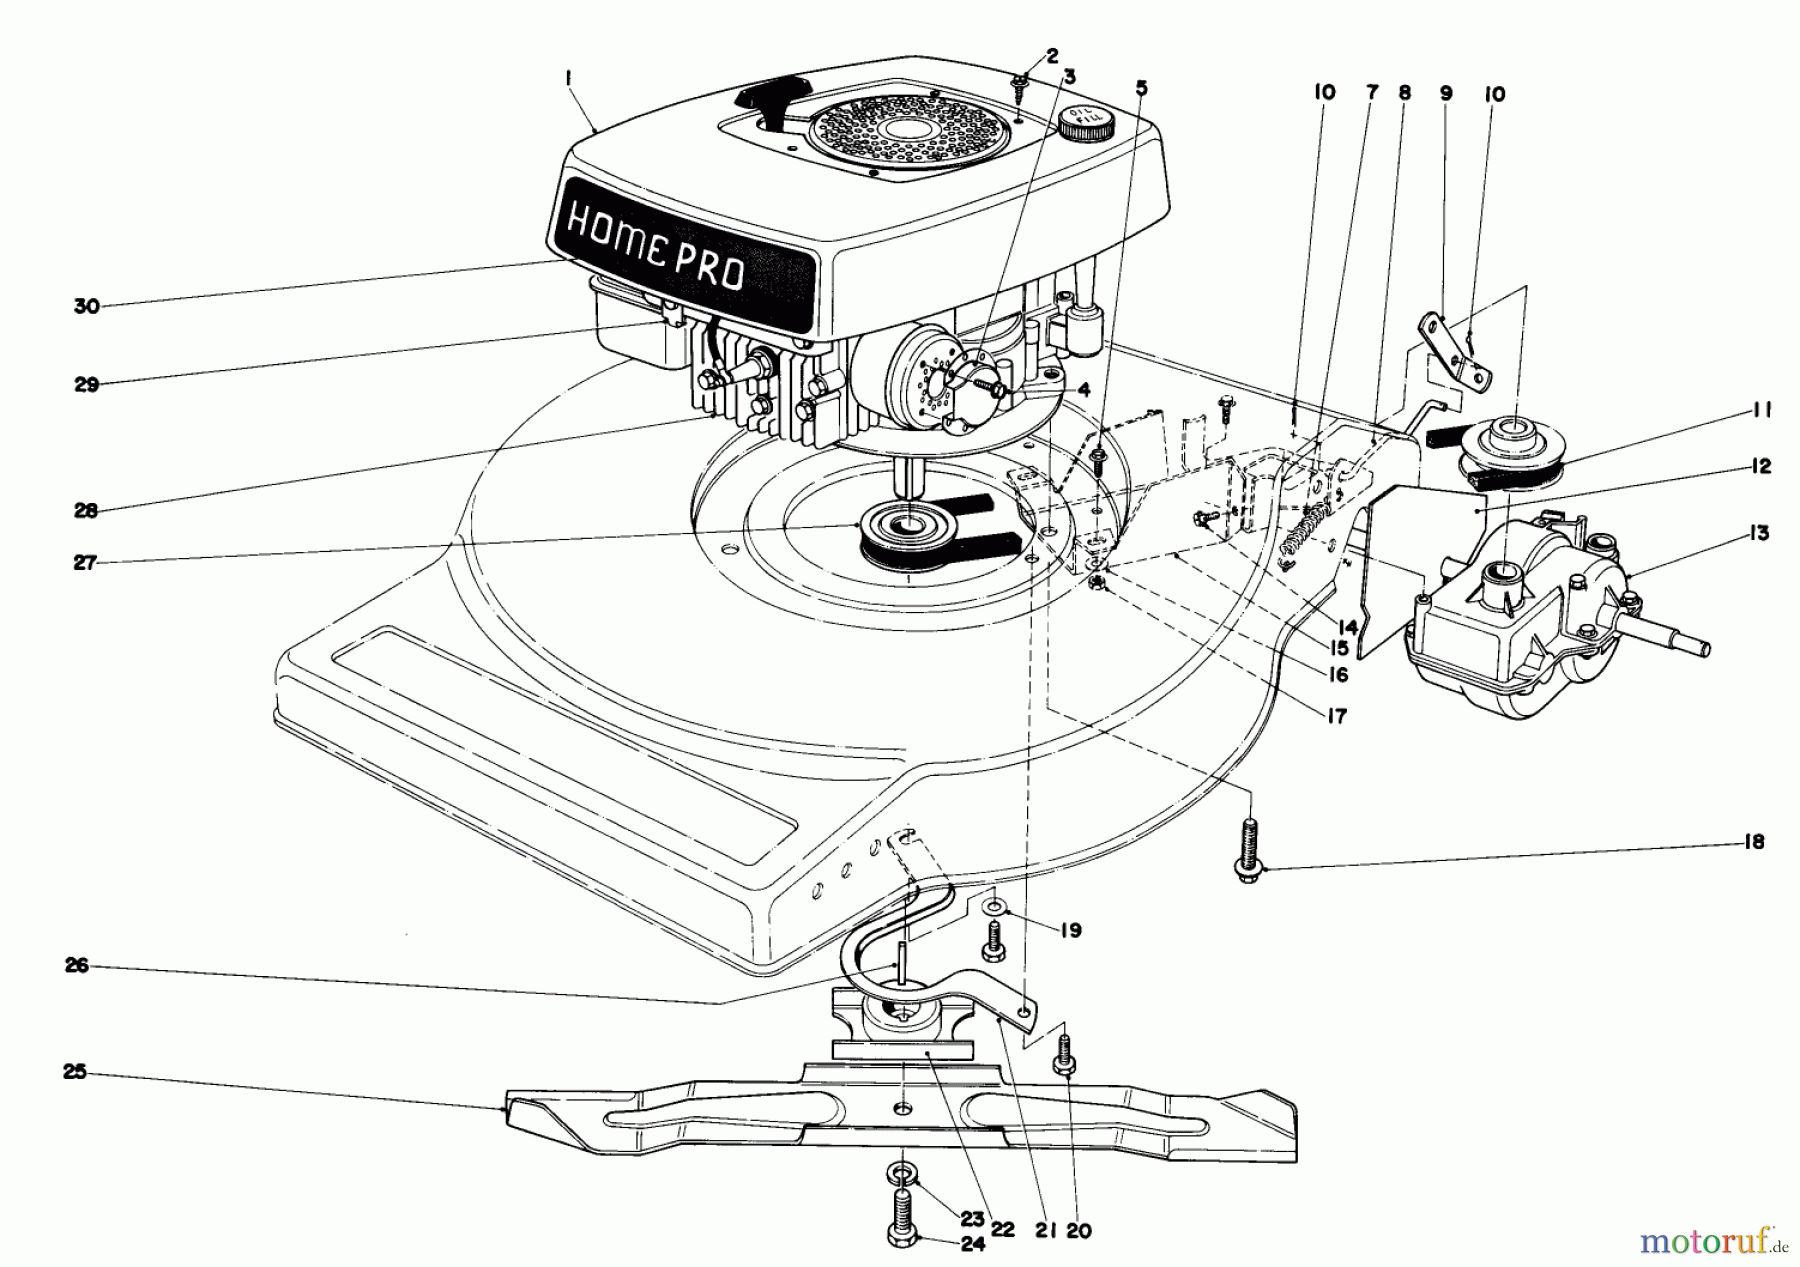  Toro Neu Mowers, Walk-Behind Seite 1 16820 - Toro Lawnmower, 1979 (9000001-9999999) ENGINE ASSEMBLY (MODEL NO. 16830)